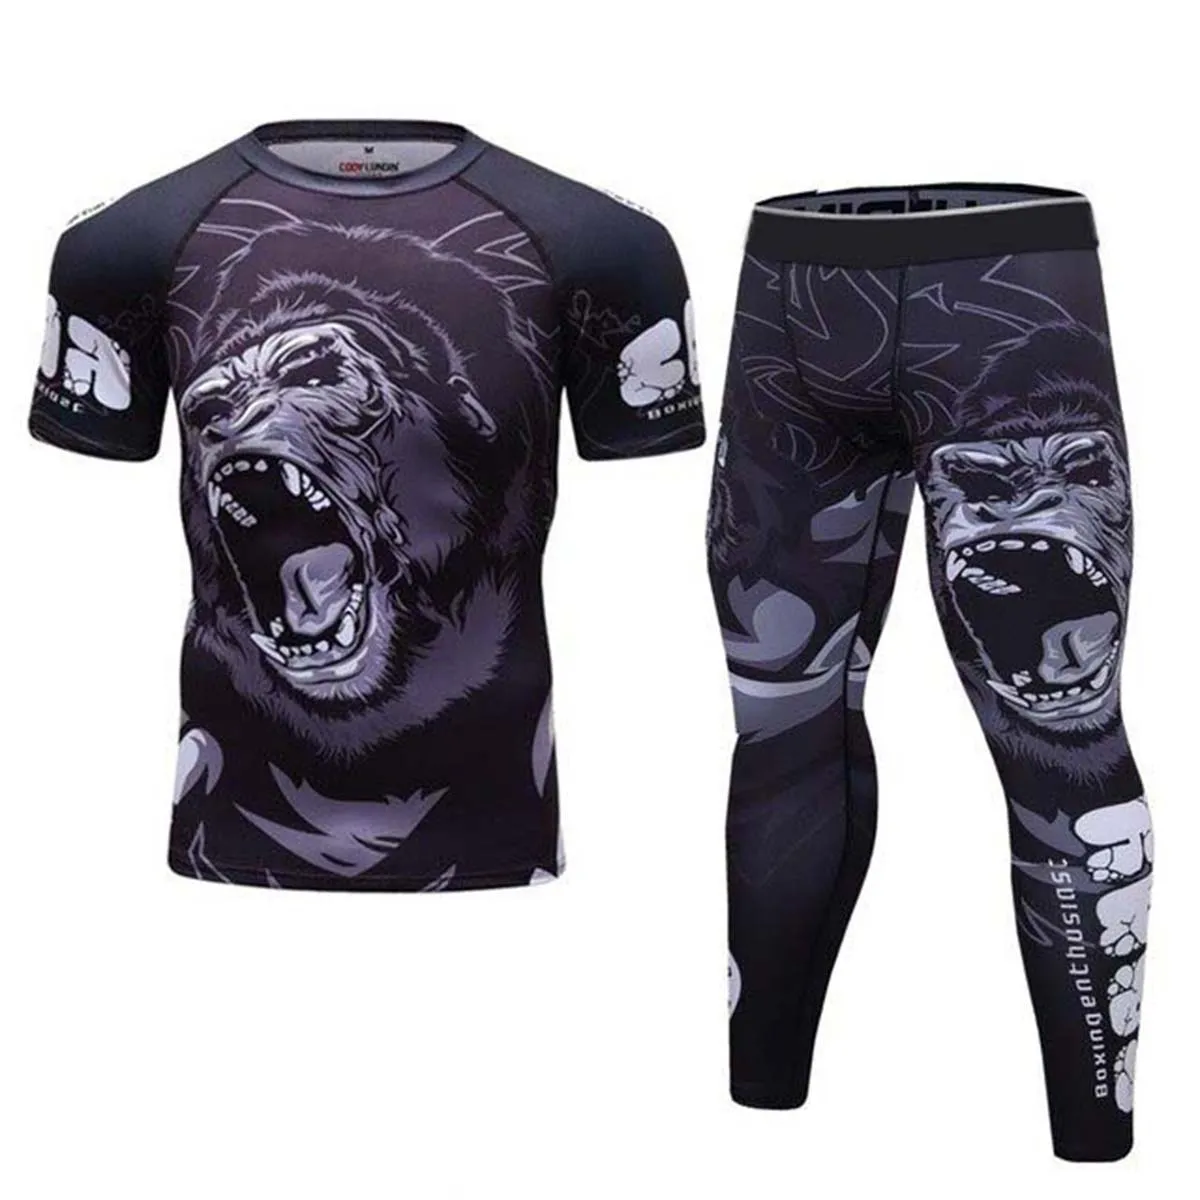 Boks formalar Muay Thai şort MMA sıkıştırma erkekler kickboks spor elbise BJJ MMA T Shirt + pantolon döküntü bekçi spor eşofman